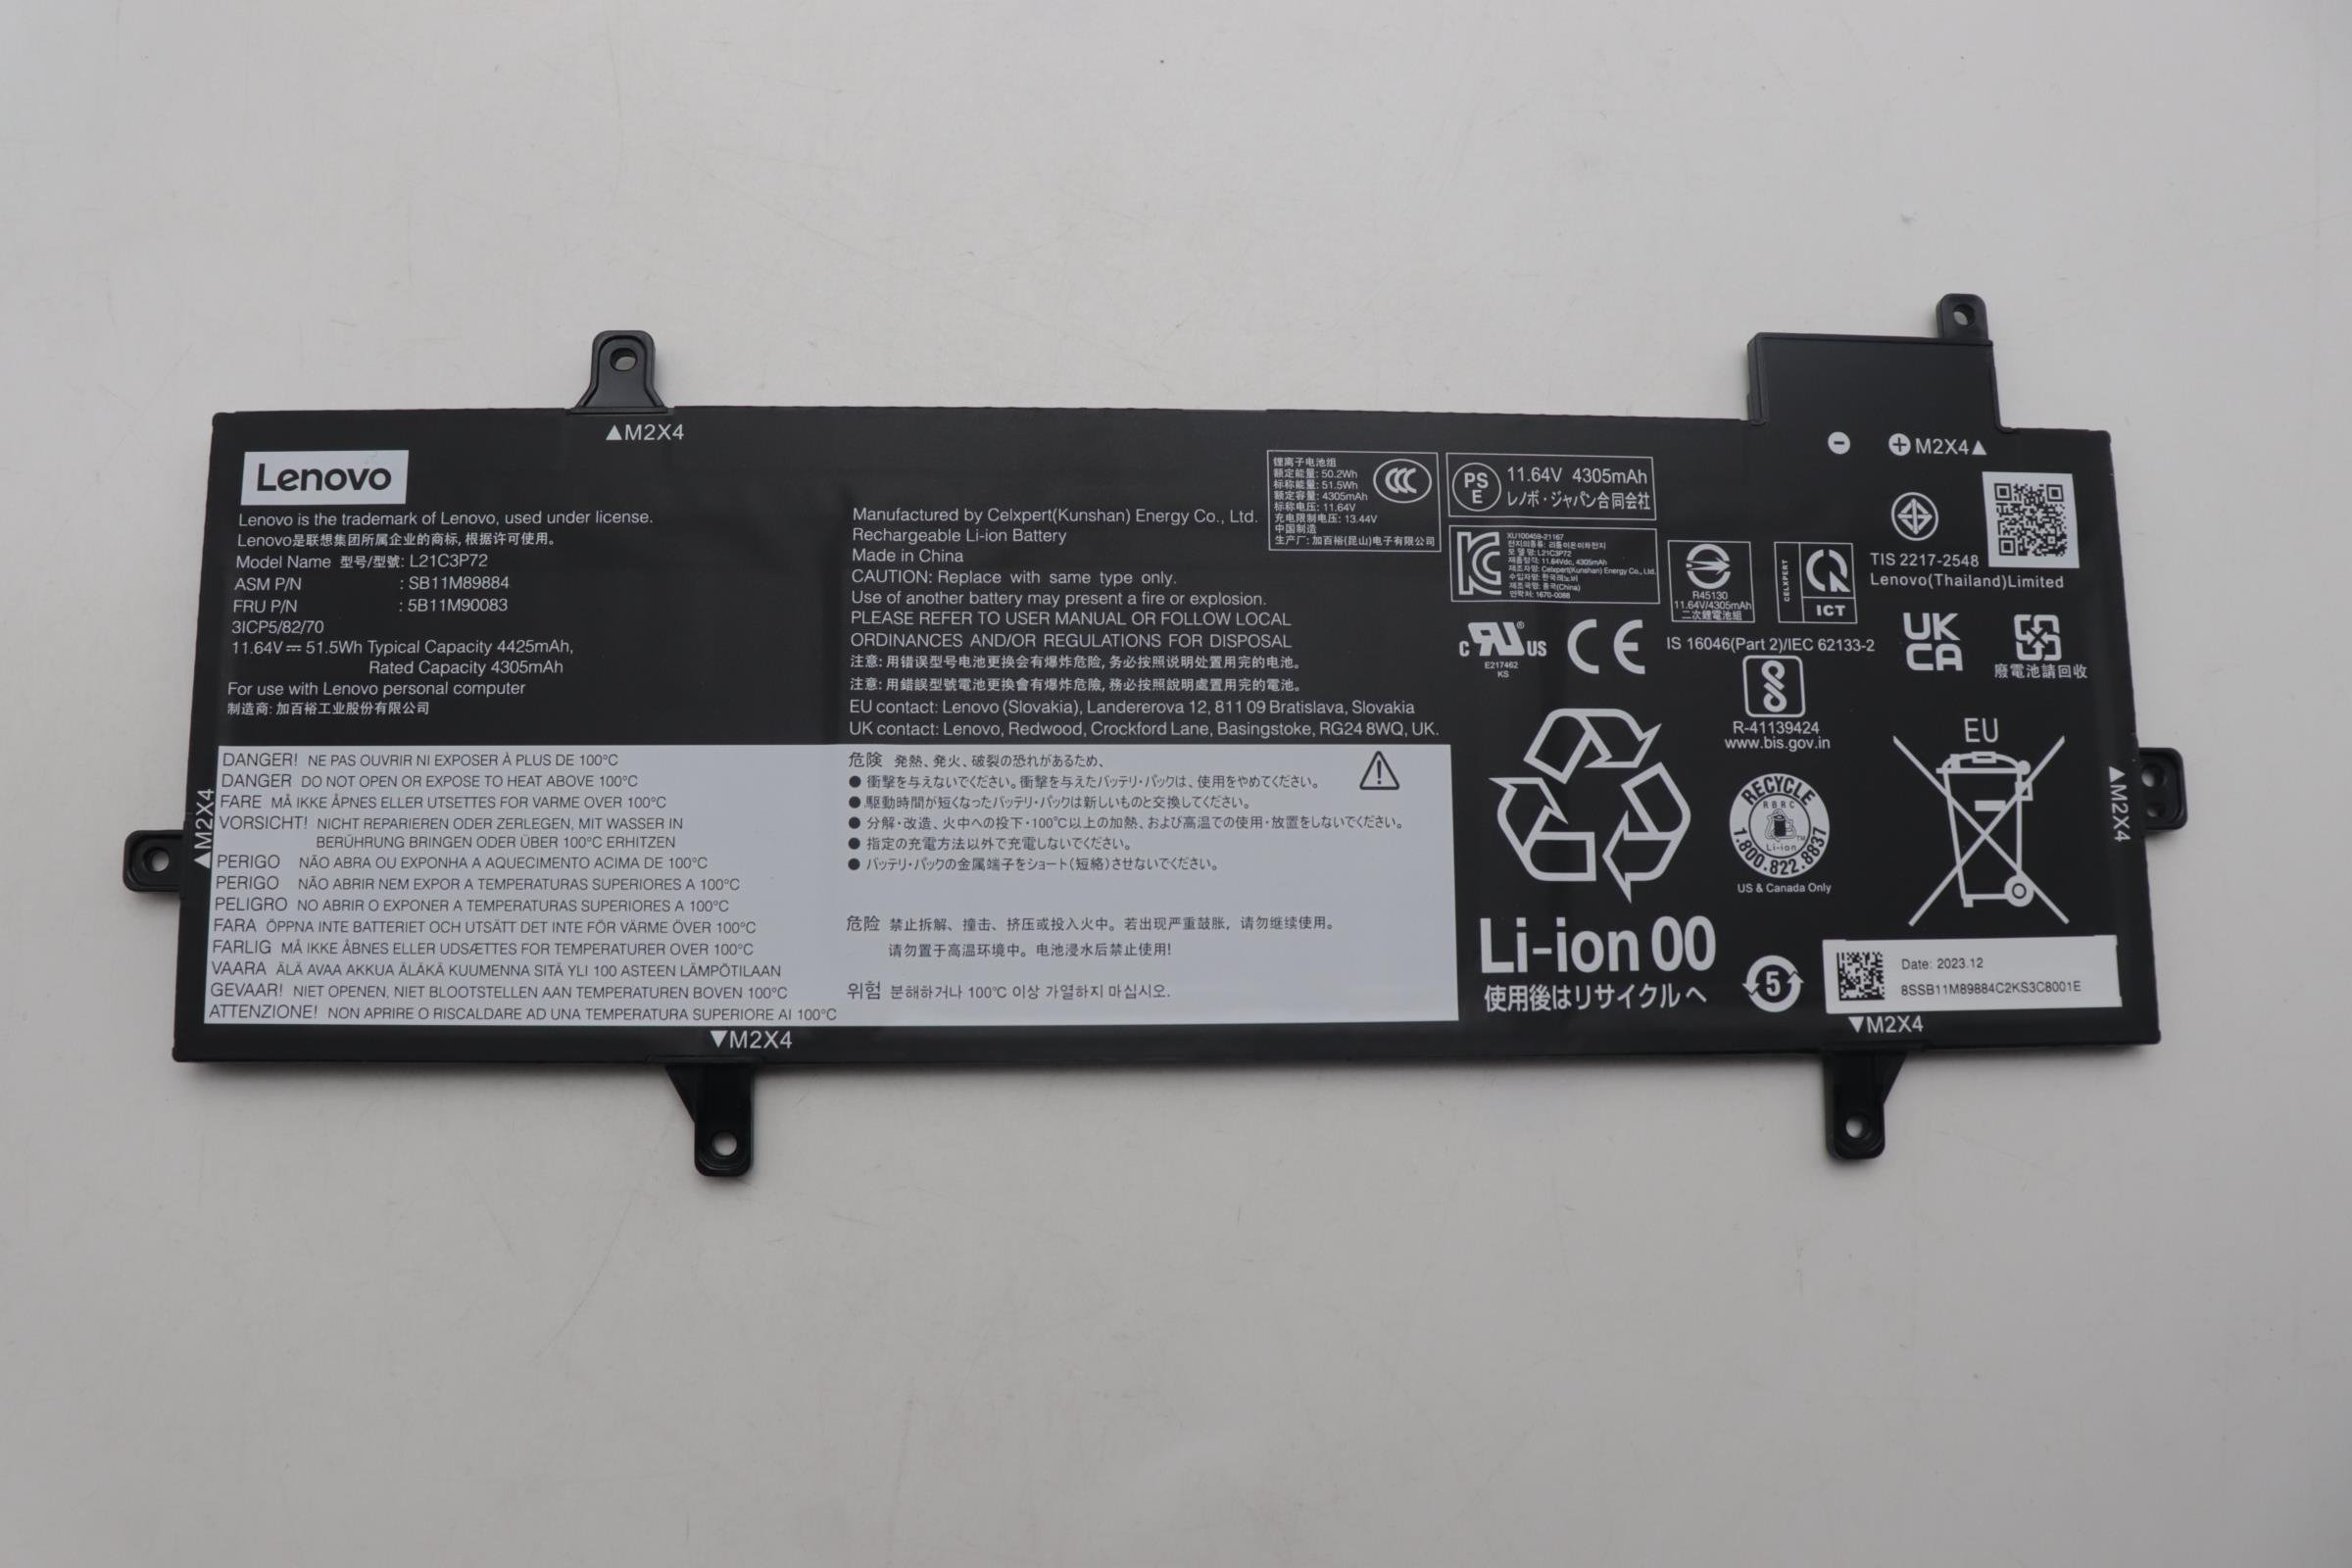 Lenovo  battery 5B11M90083